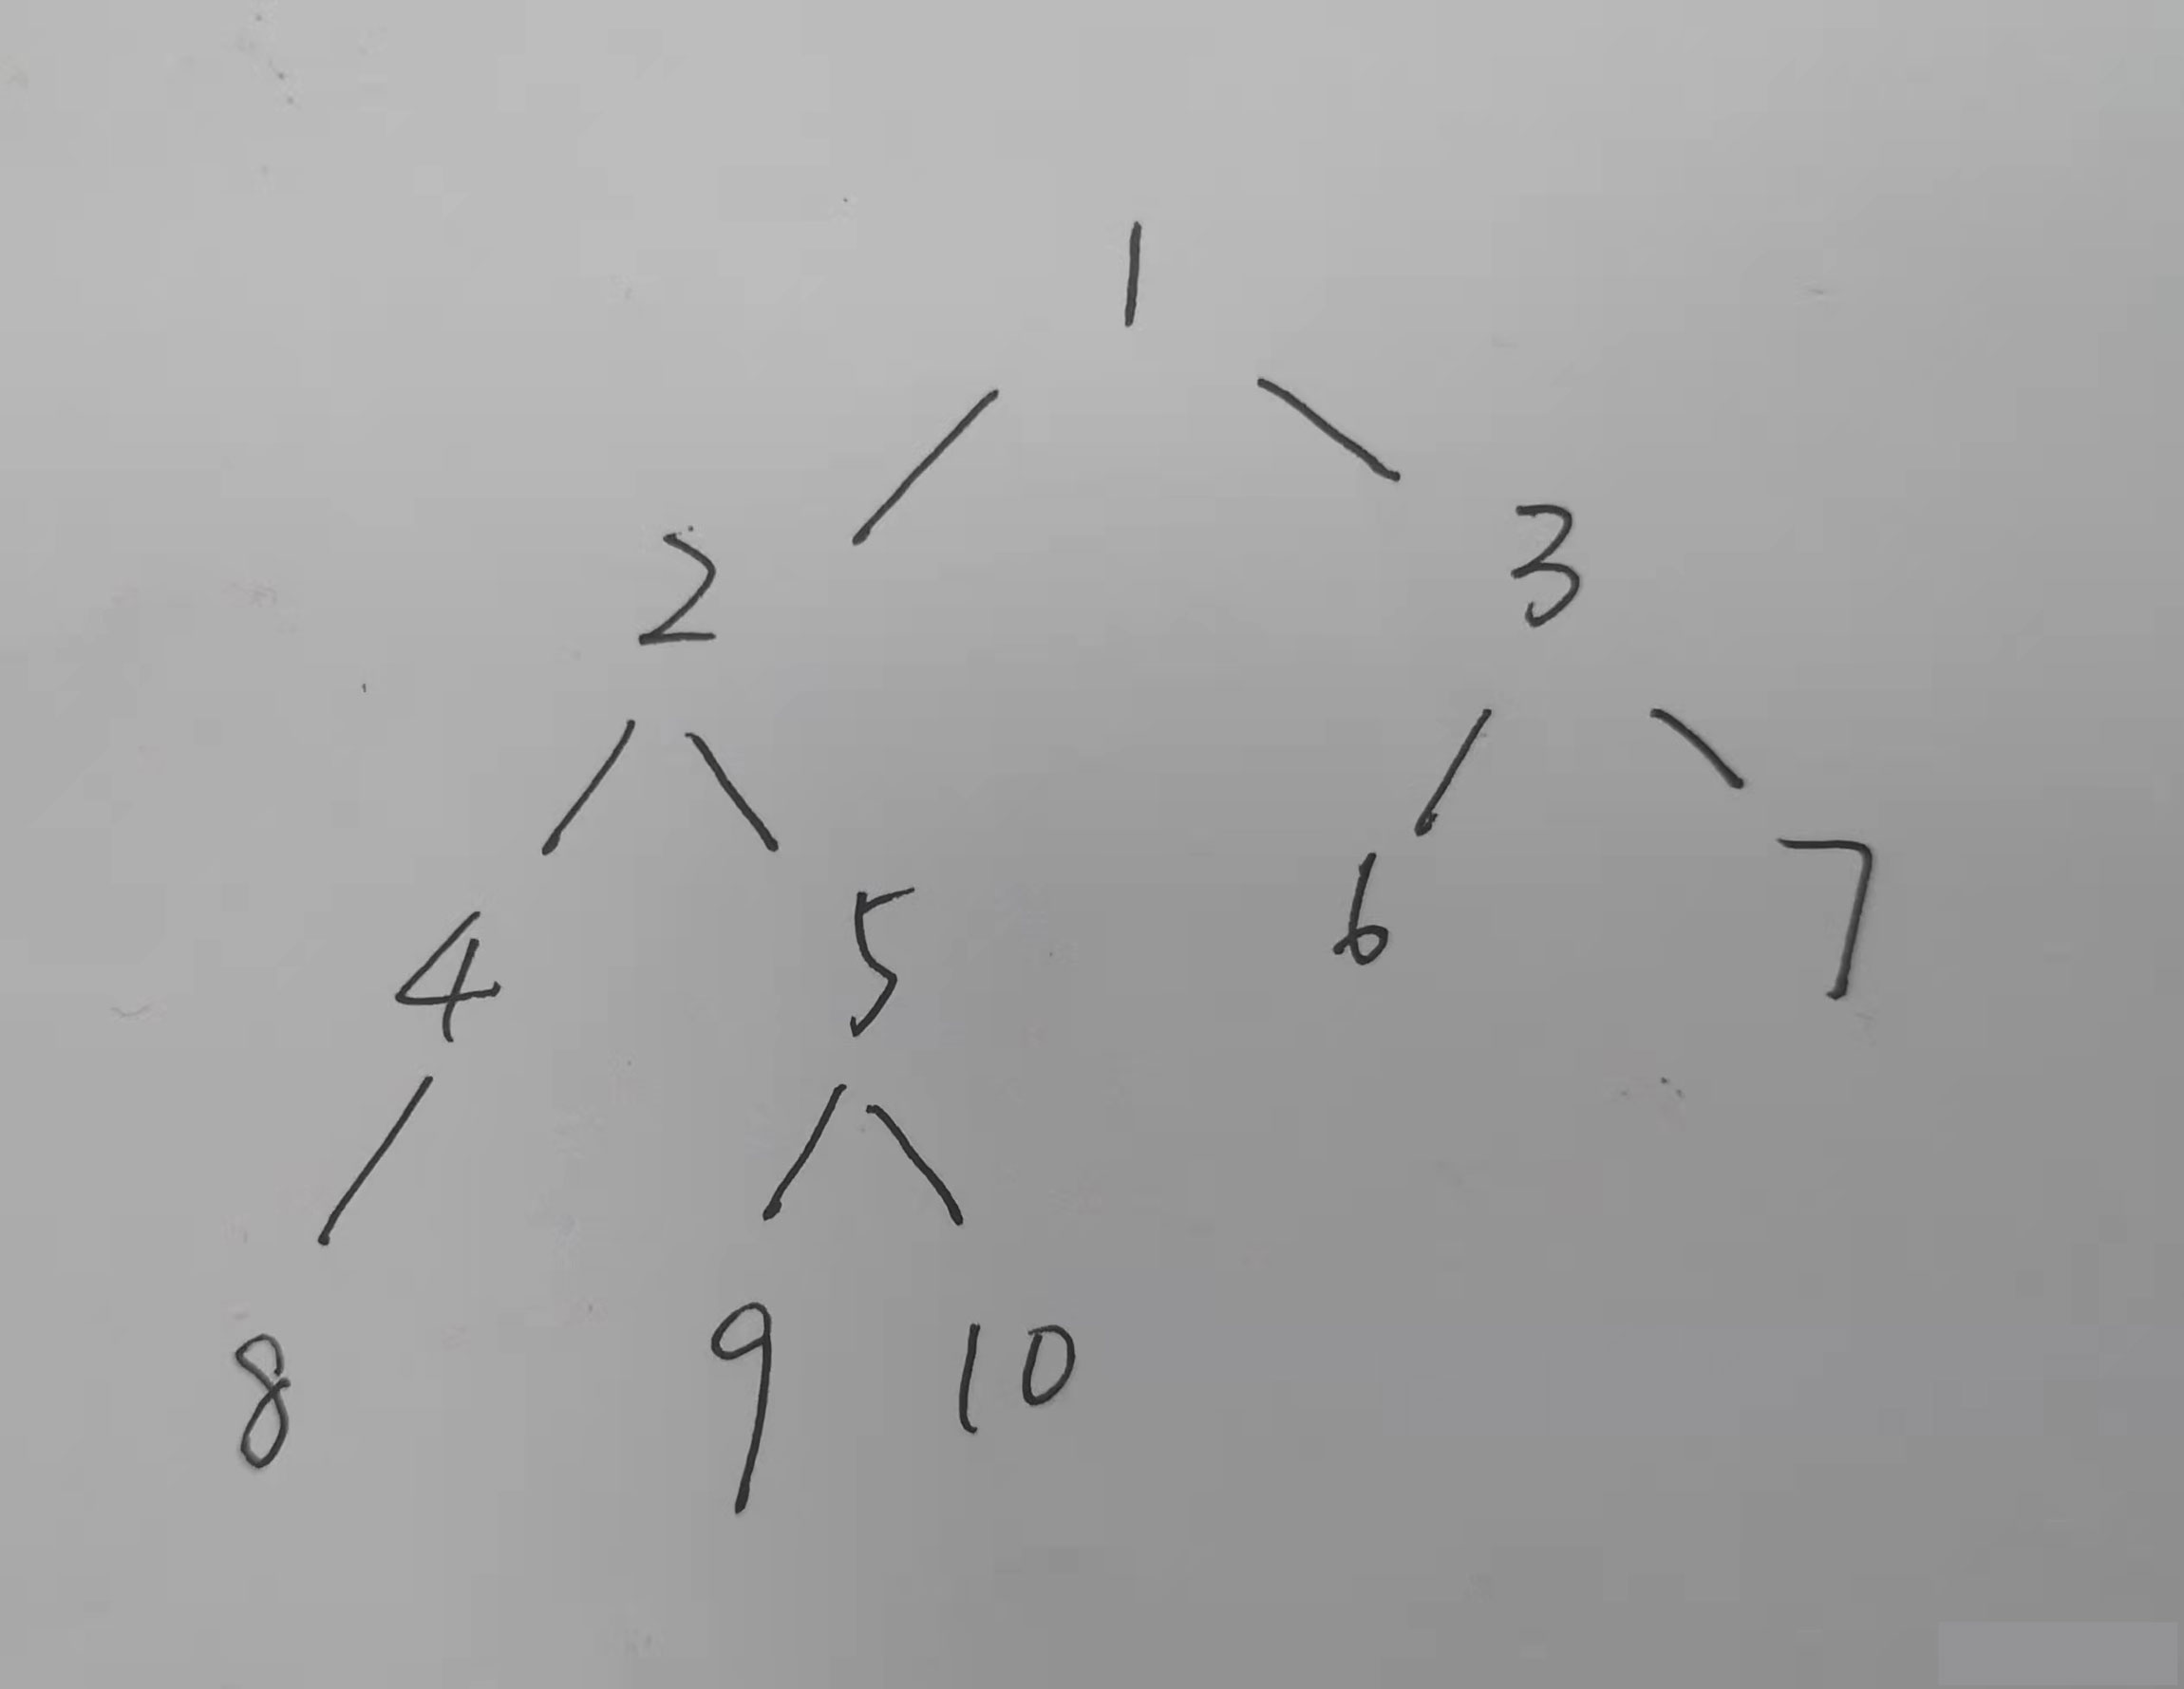 Python 递归式实现二叉树前序,中序,后序遍历